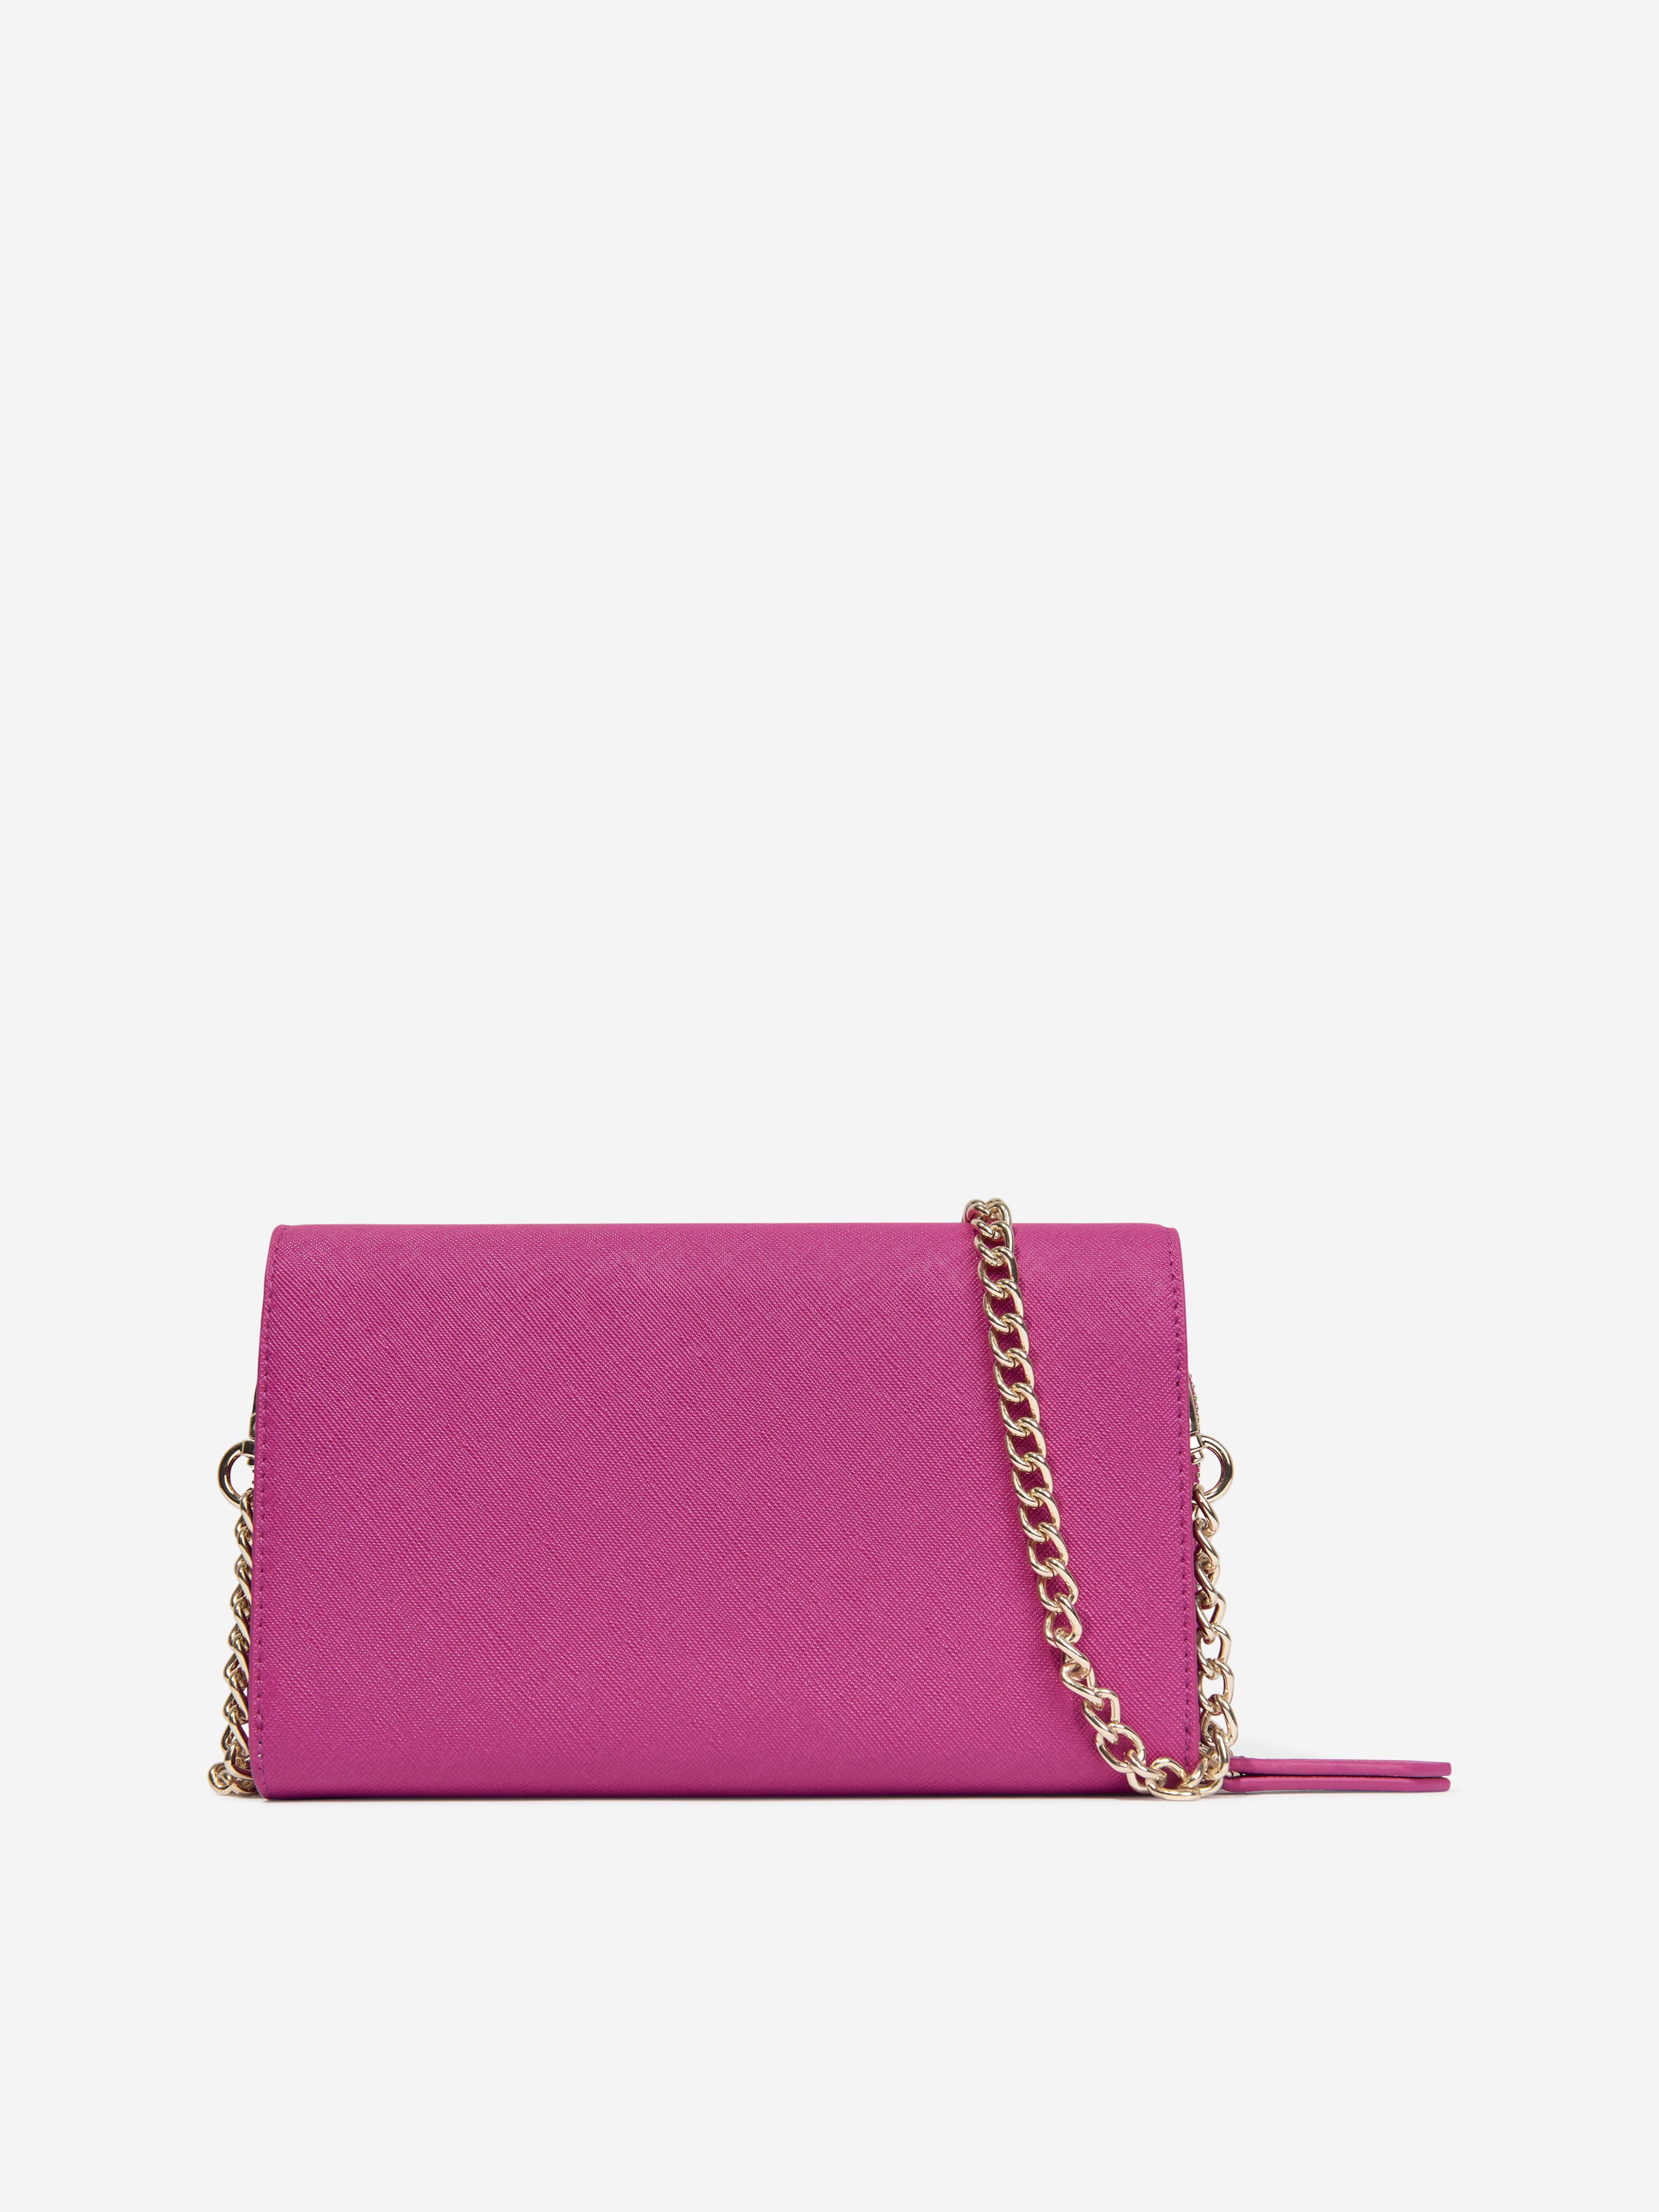 Valentino Girls Zero Wallet With Shoulder Strap in Pink (W:20cm